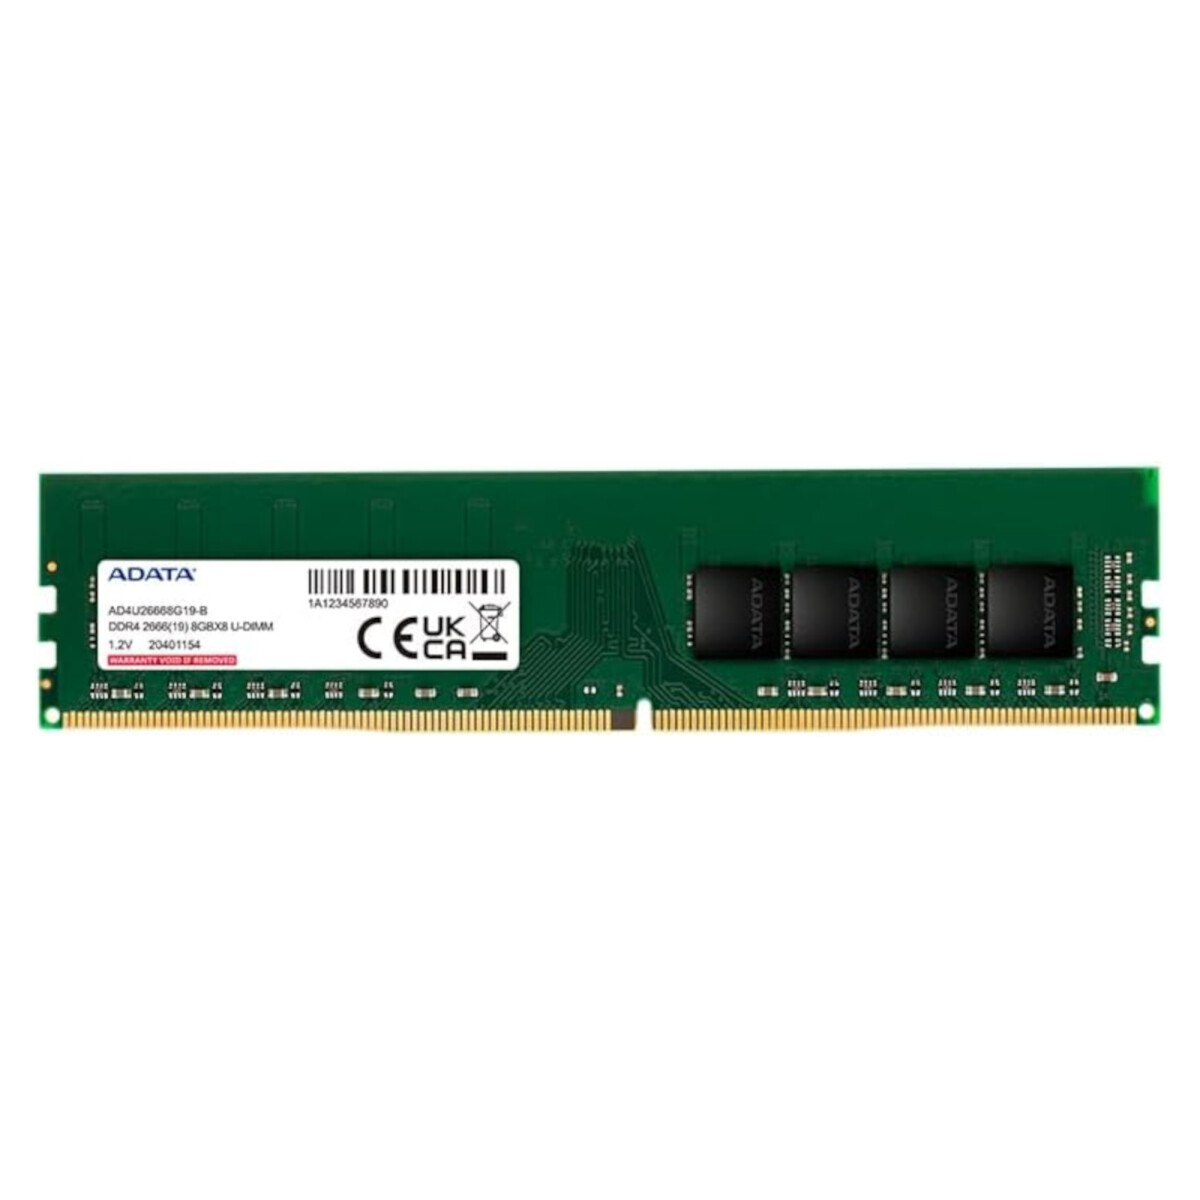 Adata - Memoria Udimm DDR4 - 8GB. 2666MHZ. 288 Pines. - 001 